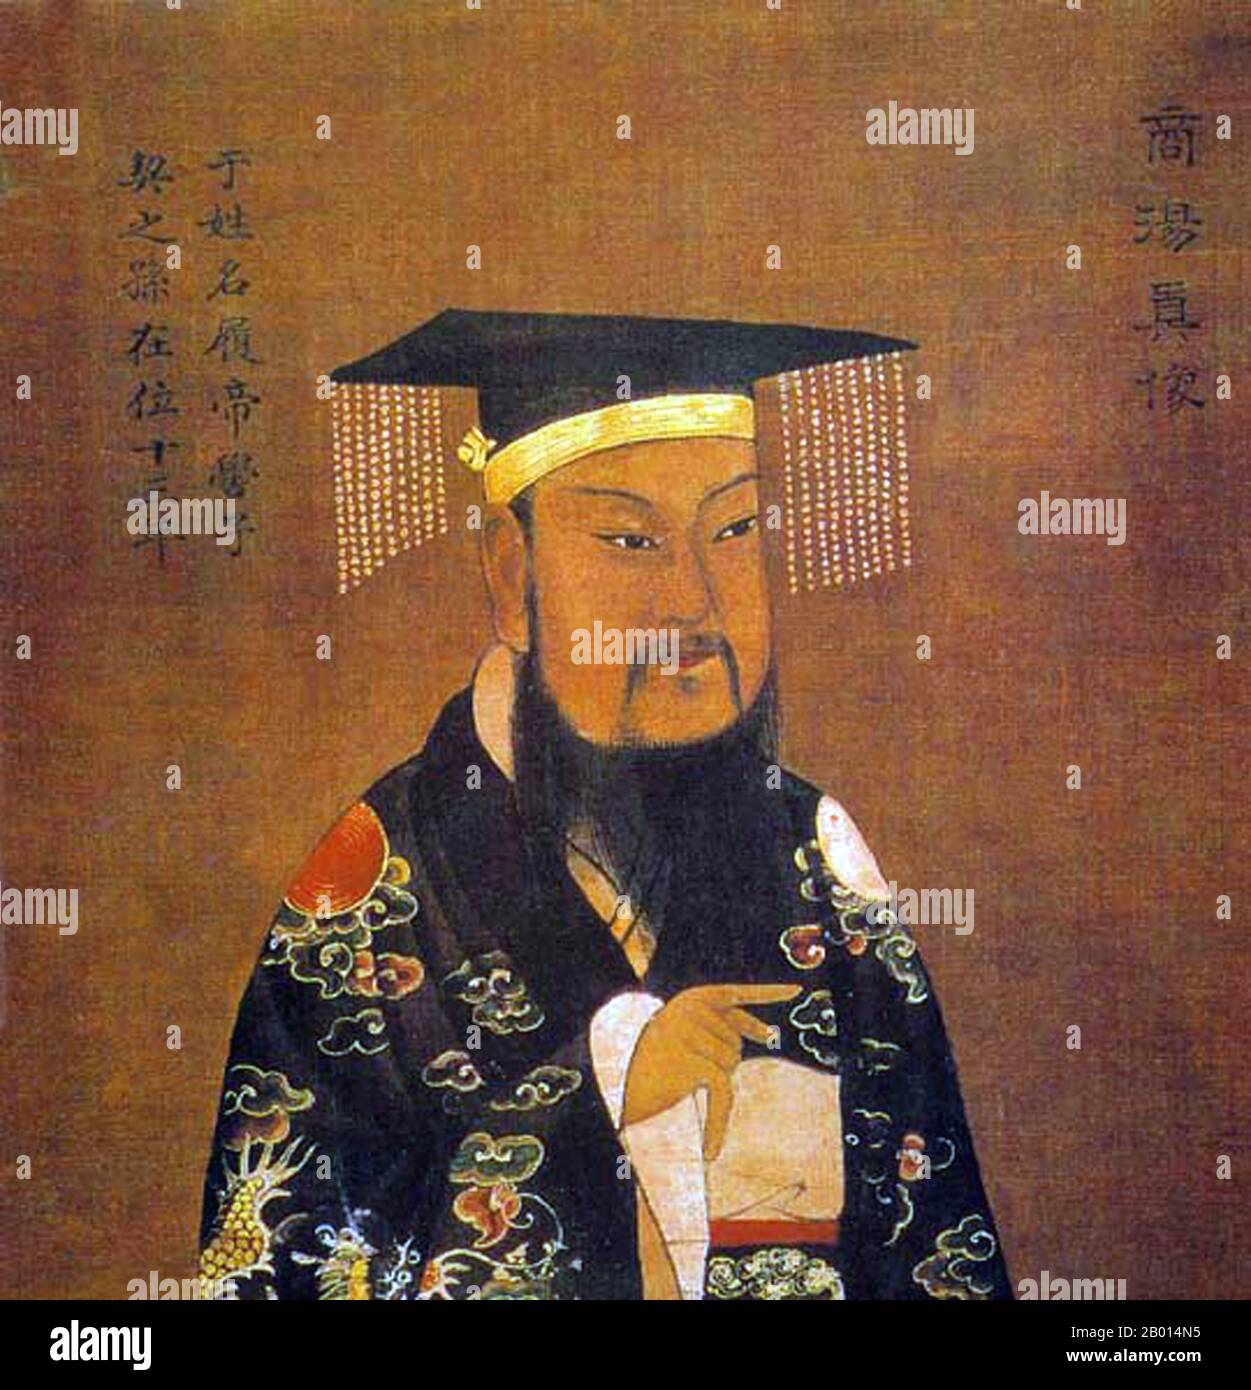 Cina: Re Cheng Tang di Shang (ca. 1675 a.C.-1646 a.C.), 1° re della dinastia Shang. Pittura a mano, 13 ° secolo. Cheng Tang, nome personale Zi Lu e conosciuto anche come da Yi, fu il primo re della dinastia Shang. Salì al potere negli ultimi giorni della dinastia Xia, quando Shang era uno dei molti regni vassali della dinastia Xia. Rovesciò il crudele imperatore Jie e fondò la dinastia Shang. Il suo regno era considerato buono, con tasse ridotte e tassi di iscrizione inferiori. La dinastia Shang fu secondo fonti tradizionali la seconda dinastia cinese, dopo la Xia. Foto Stock